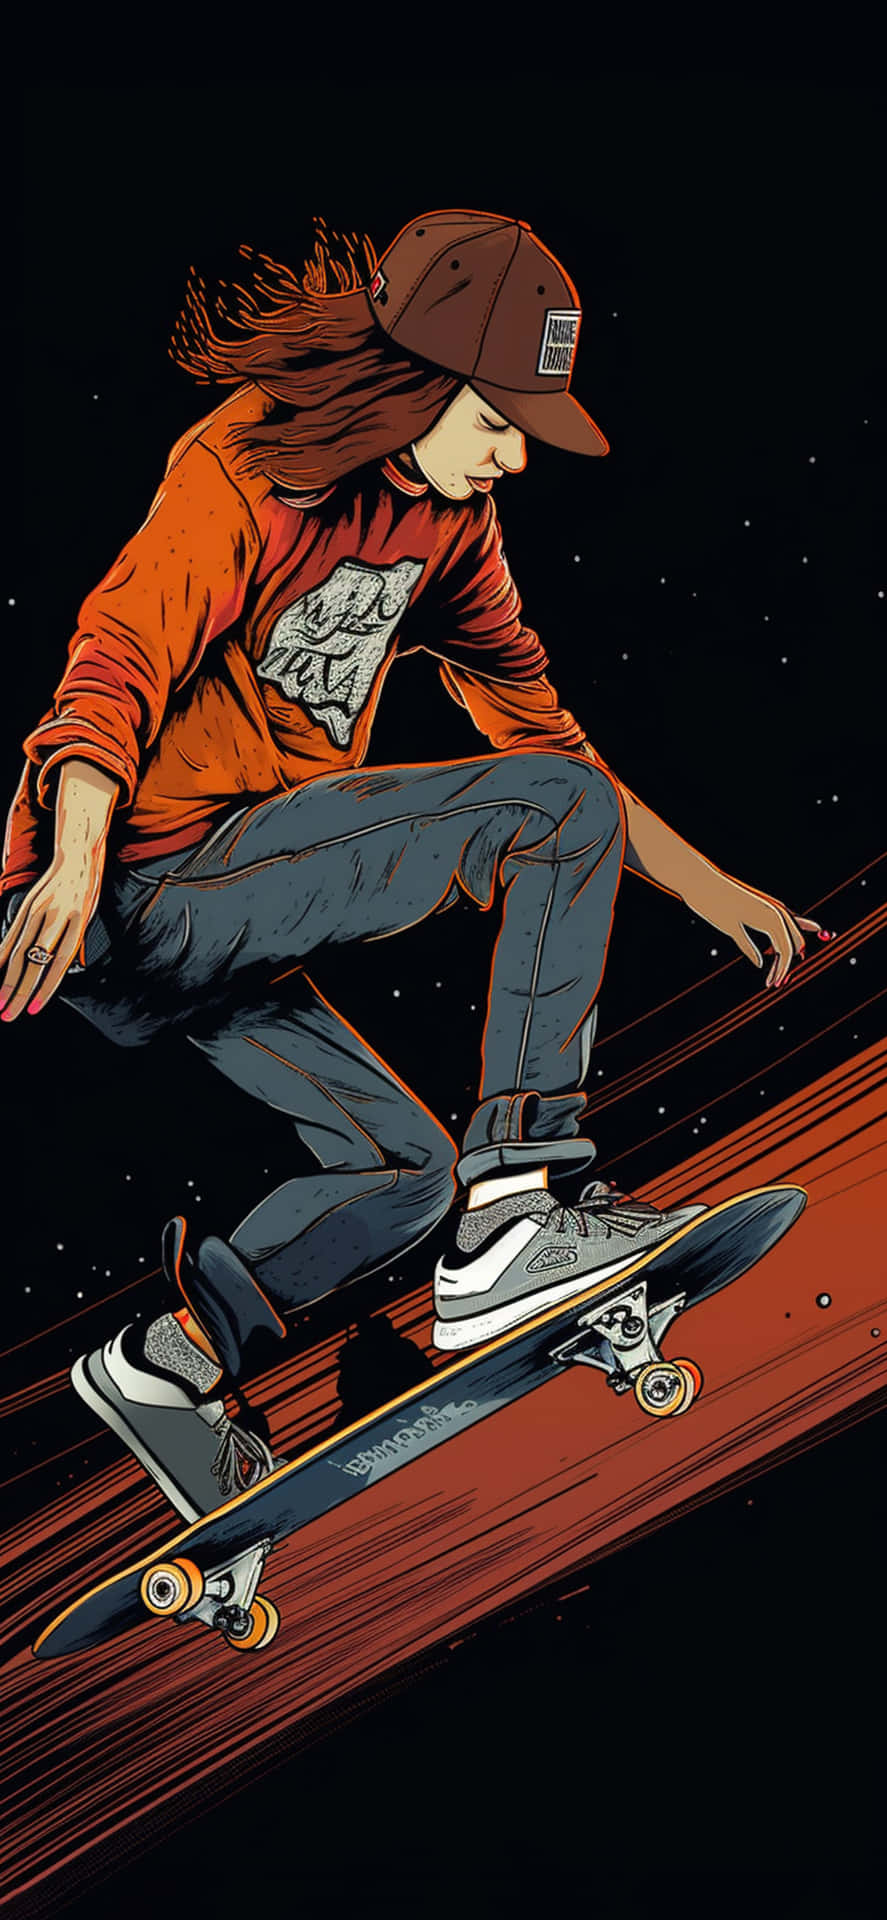 Nighttime Skateboarder Illustration Wallpaper